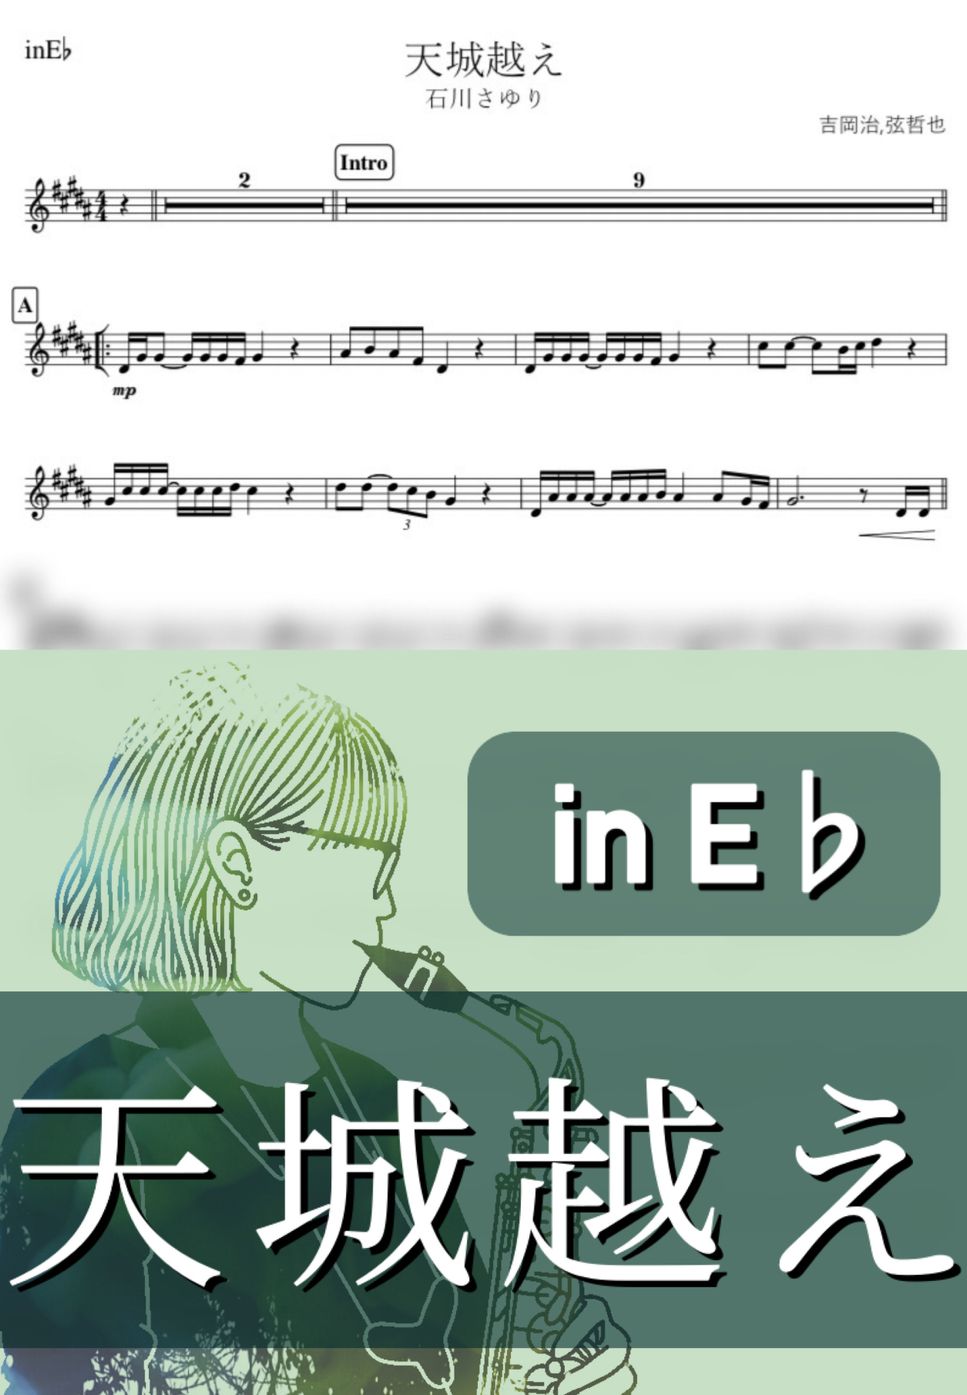 石川さゆり - 天城越え (E♭) by kanamusic